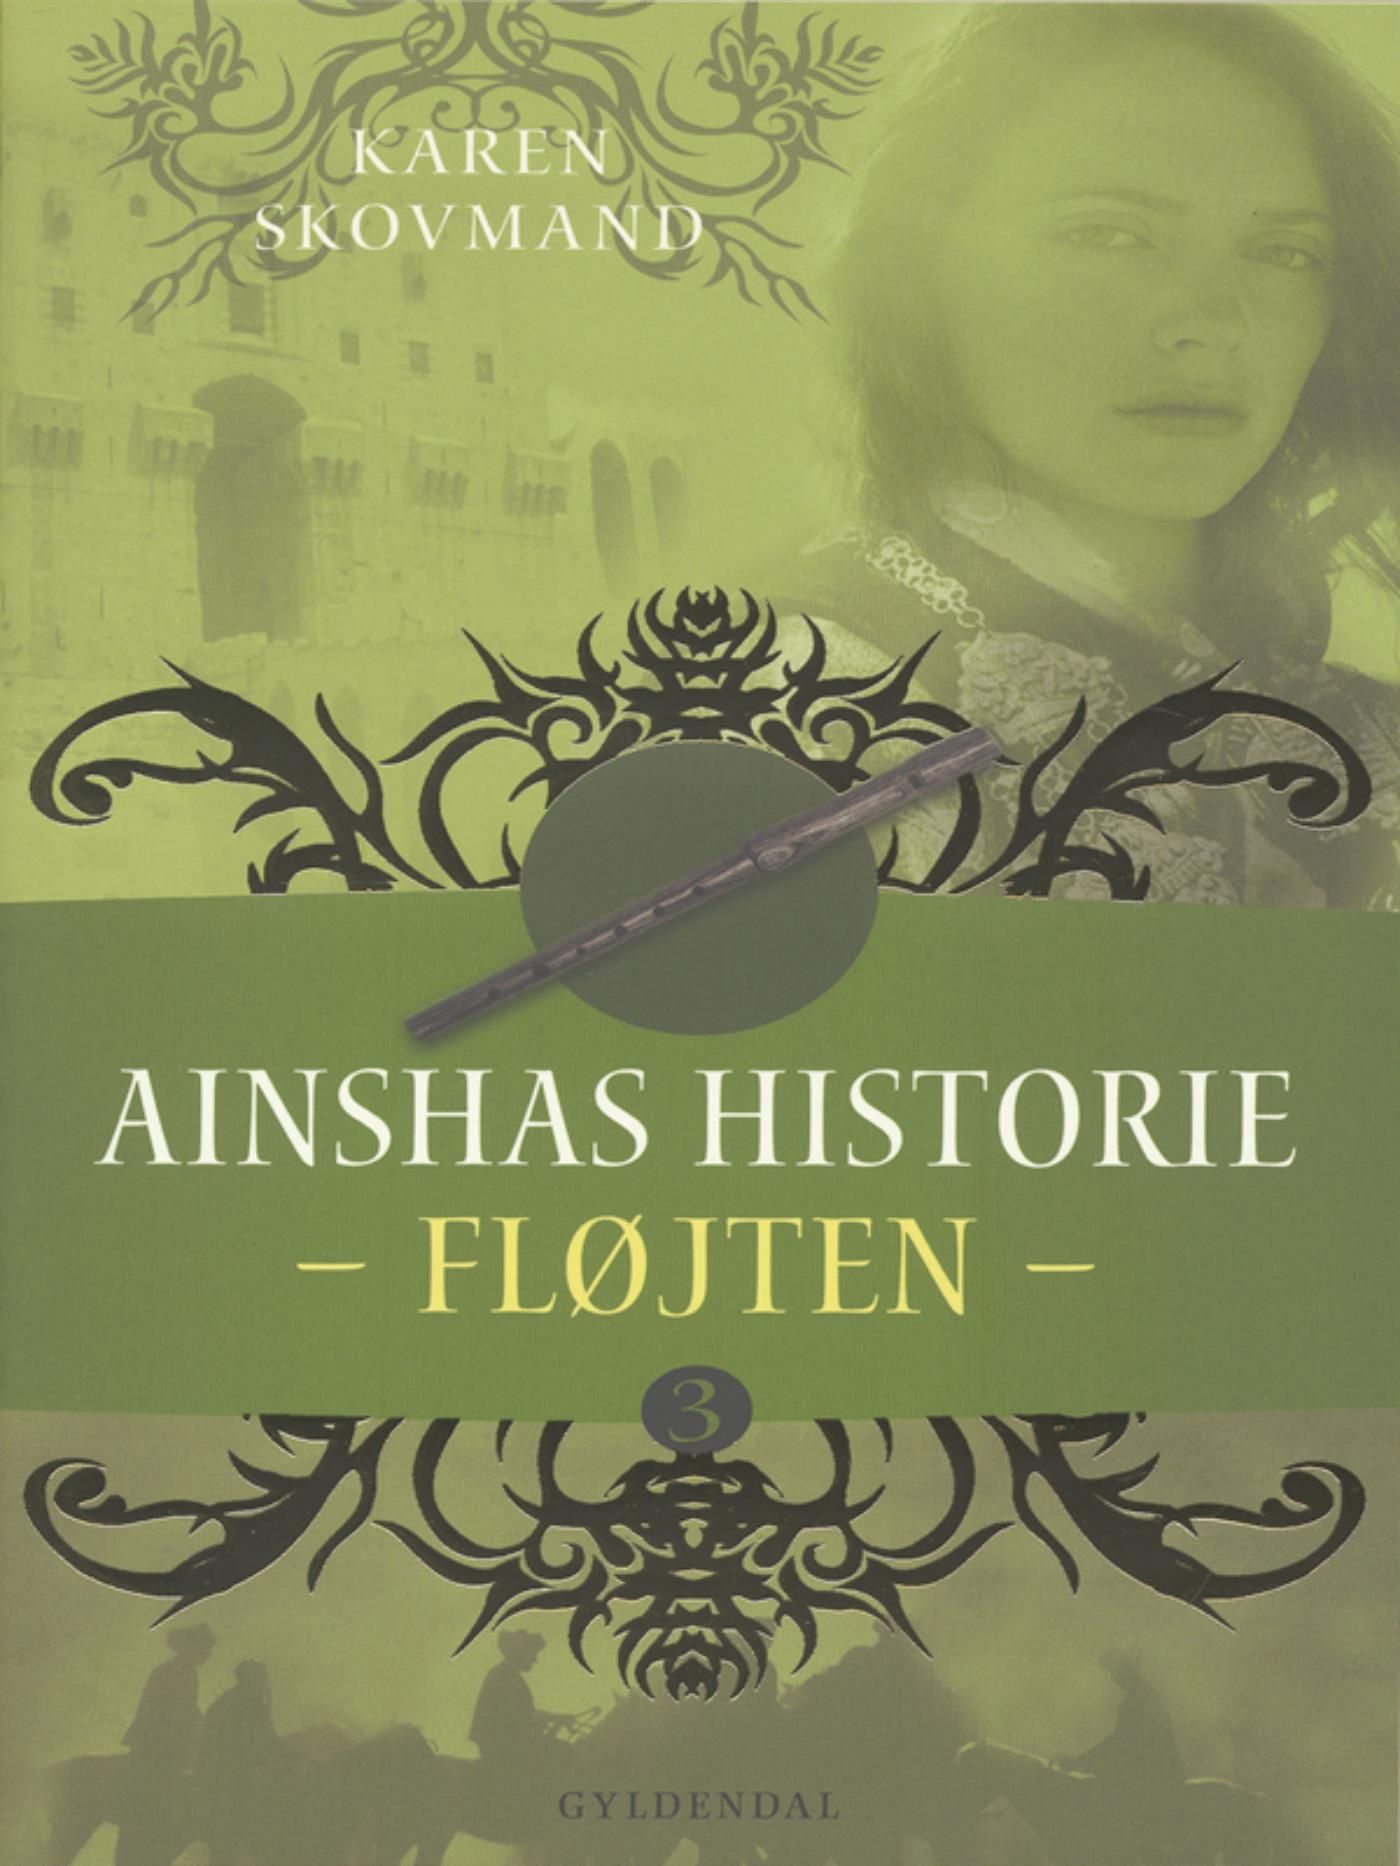 Ainshas historie 3 - Fløjten, e-bog af Karen Skovmand Jensen